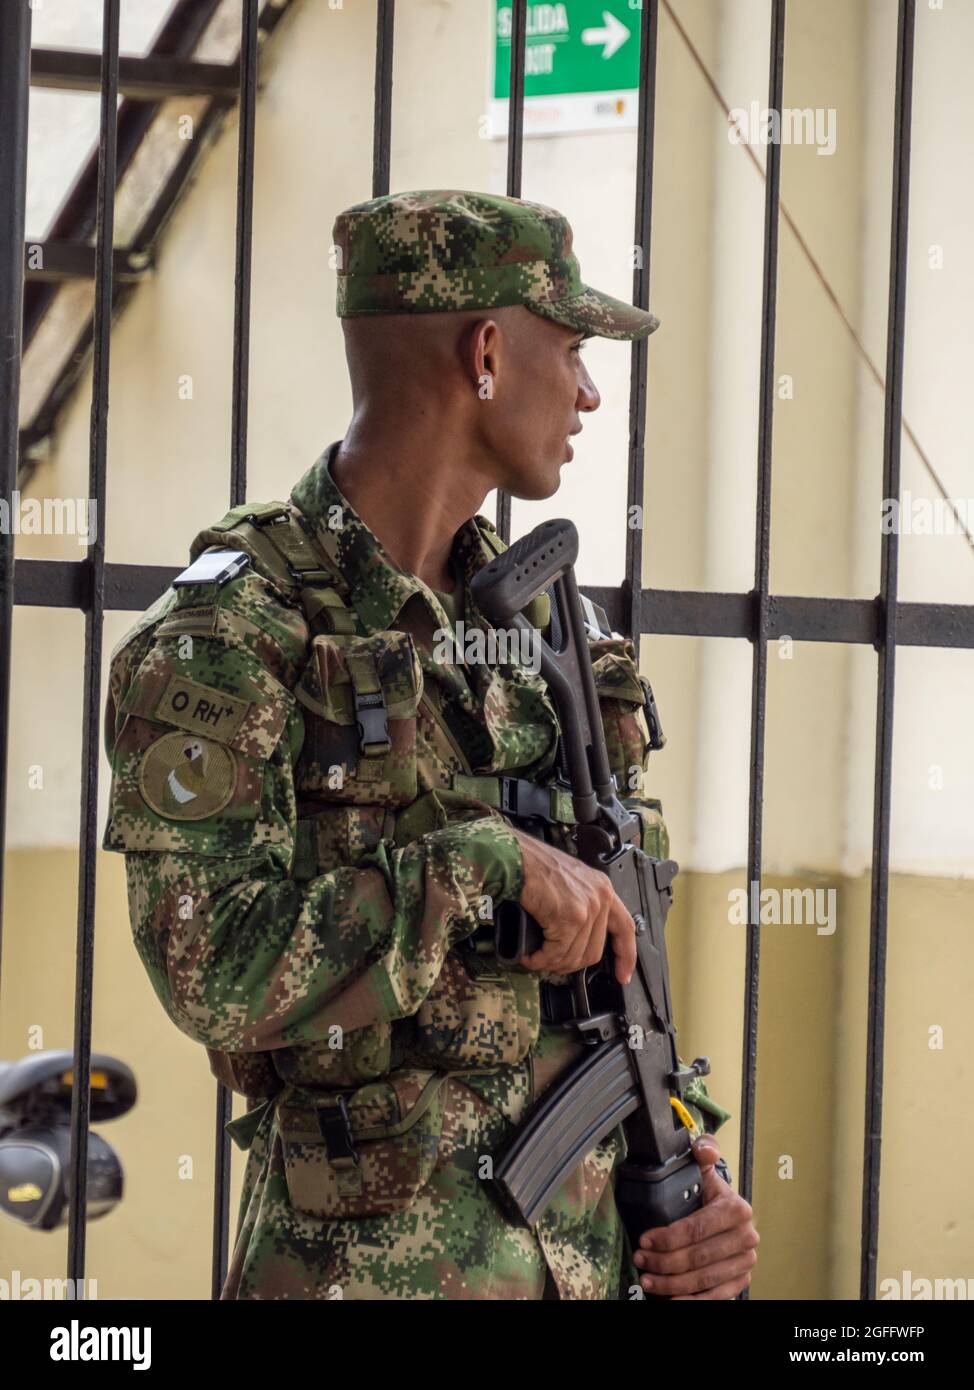 Leticia, Kolumbien - Dezember 2019: Porträt eines Soldaten mit einer Waffe auf der Wache an den Grenzen von drei Ländern - Brasilien, Kolumbien und Peru. Amazonien. Stockfoto